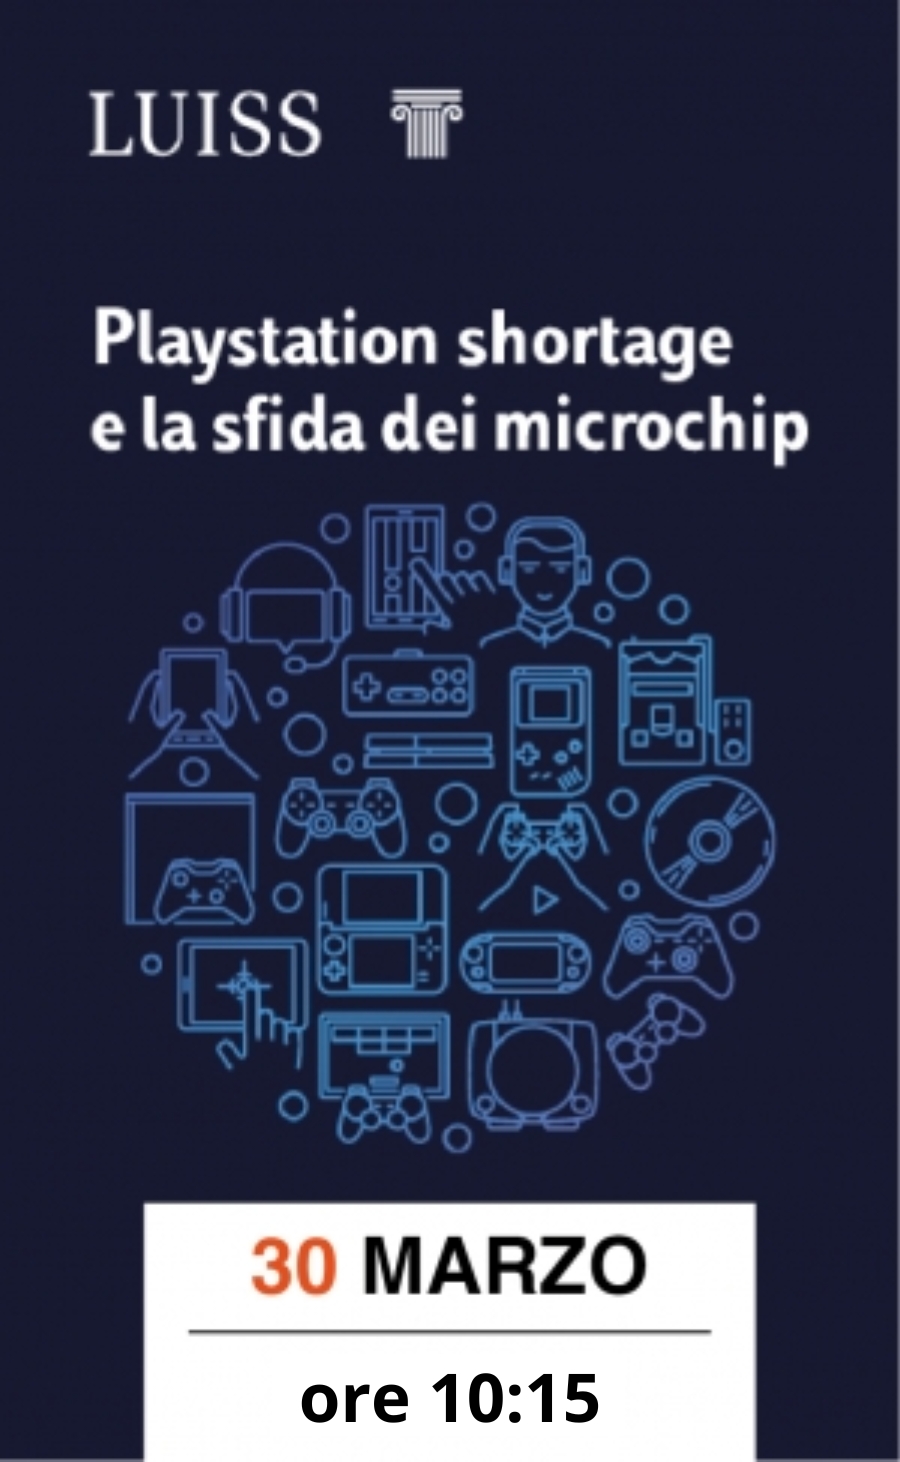 Playstation shortage e la sfida dei microchip